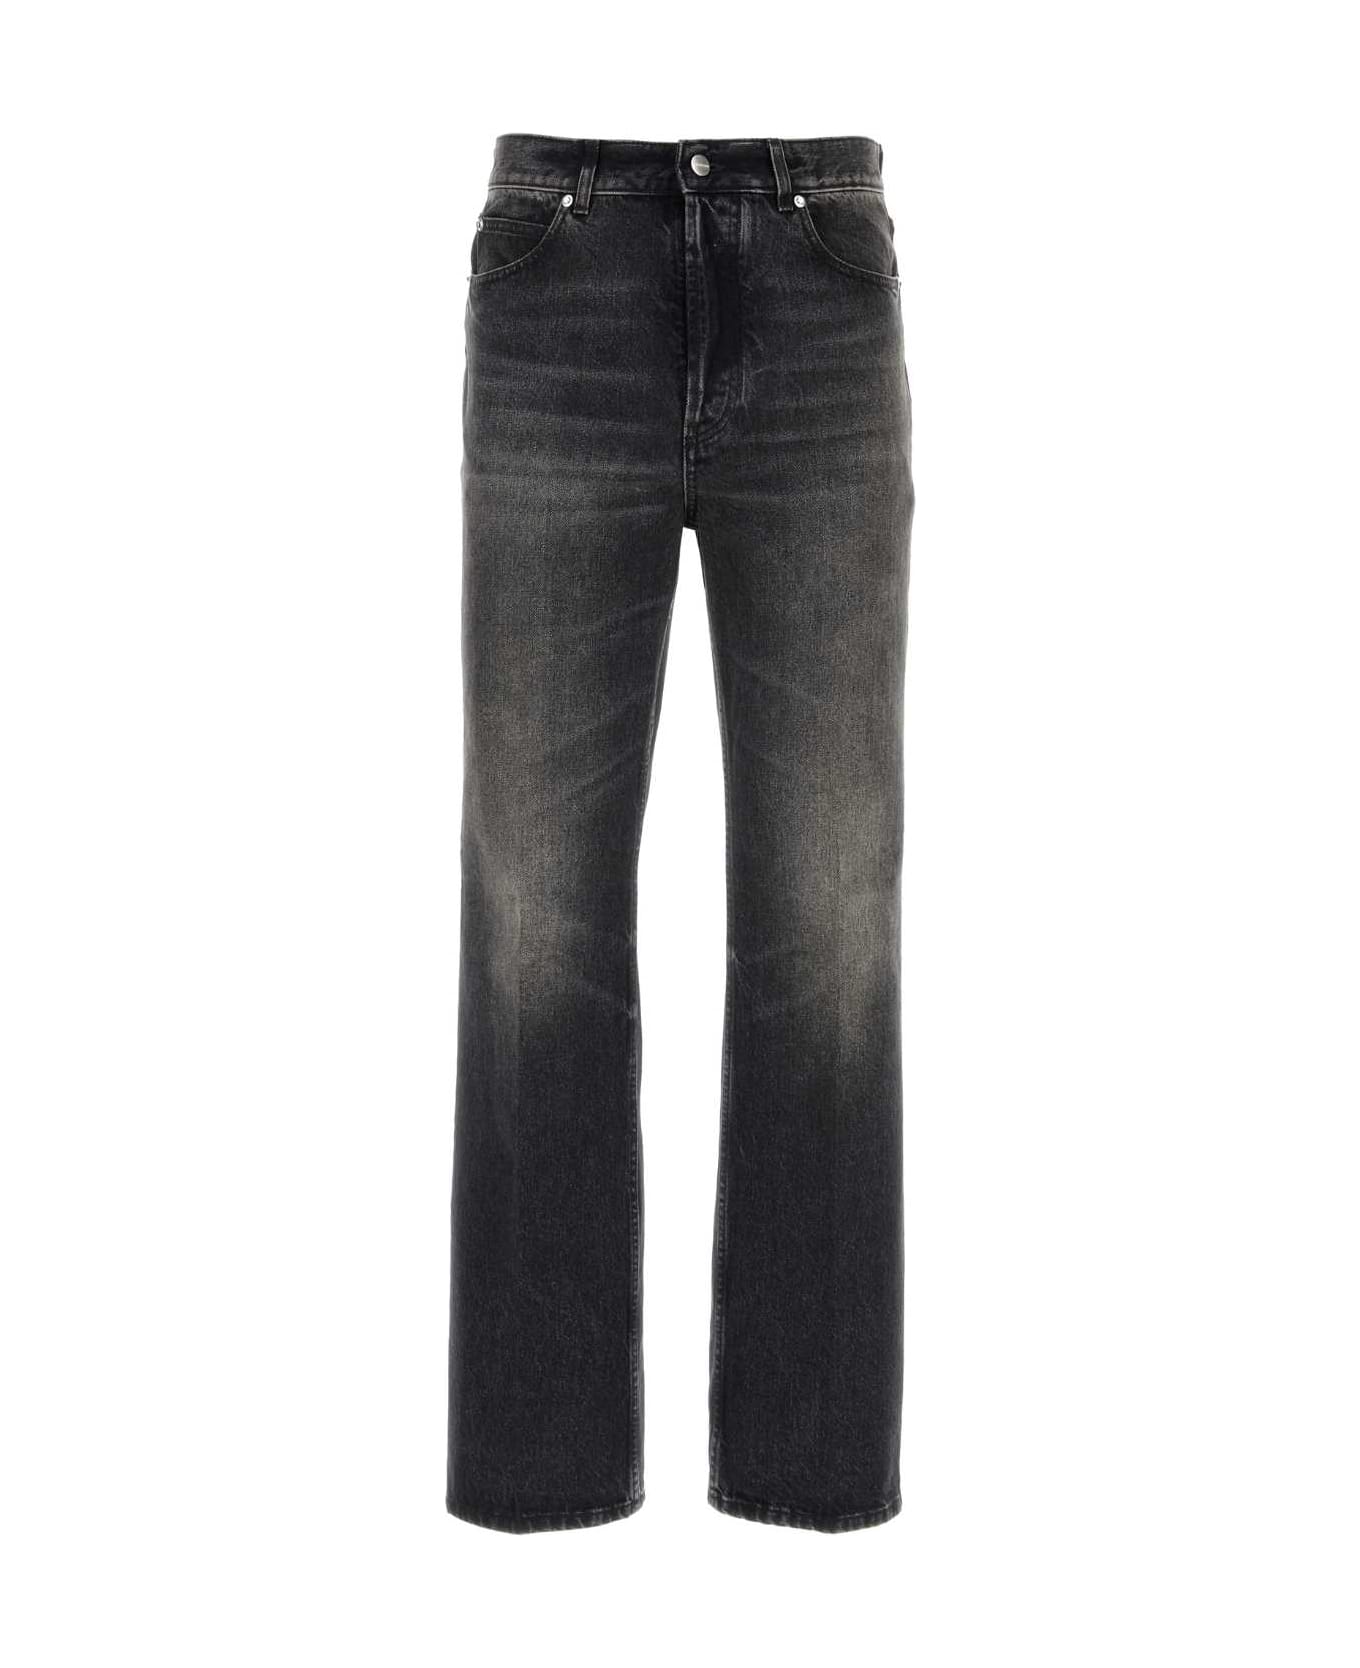 Ferragamo Black Denim Jeans - NERO